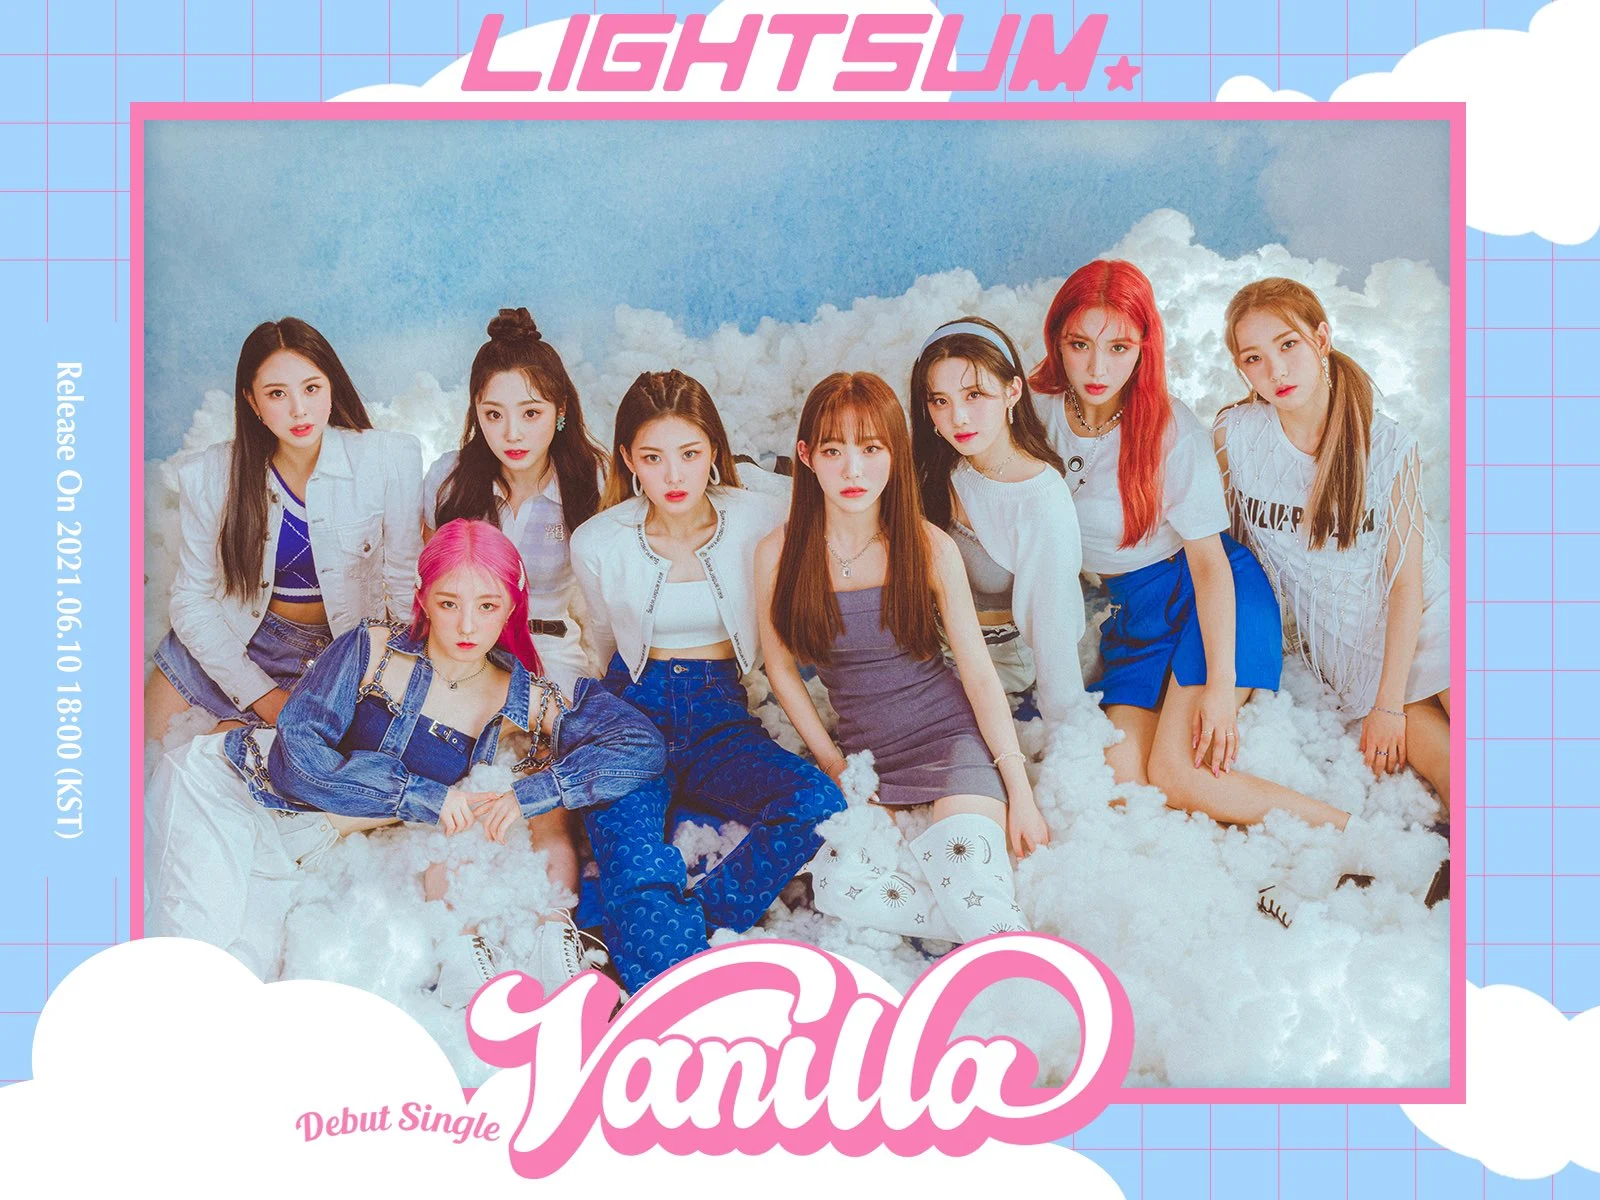 Lightsum hace su debut con Vanilla, el nuevo grupo de Cube Entertainment